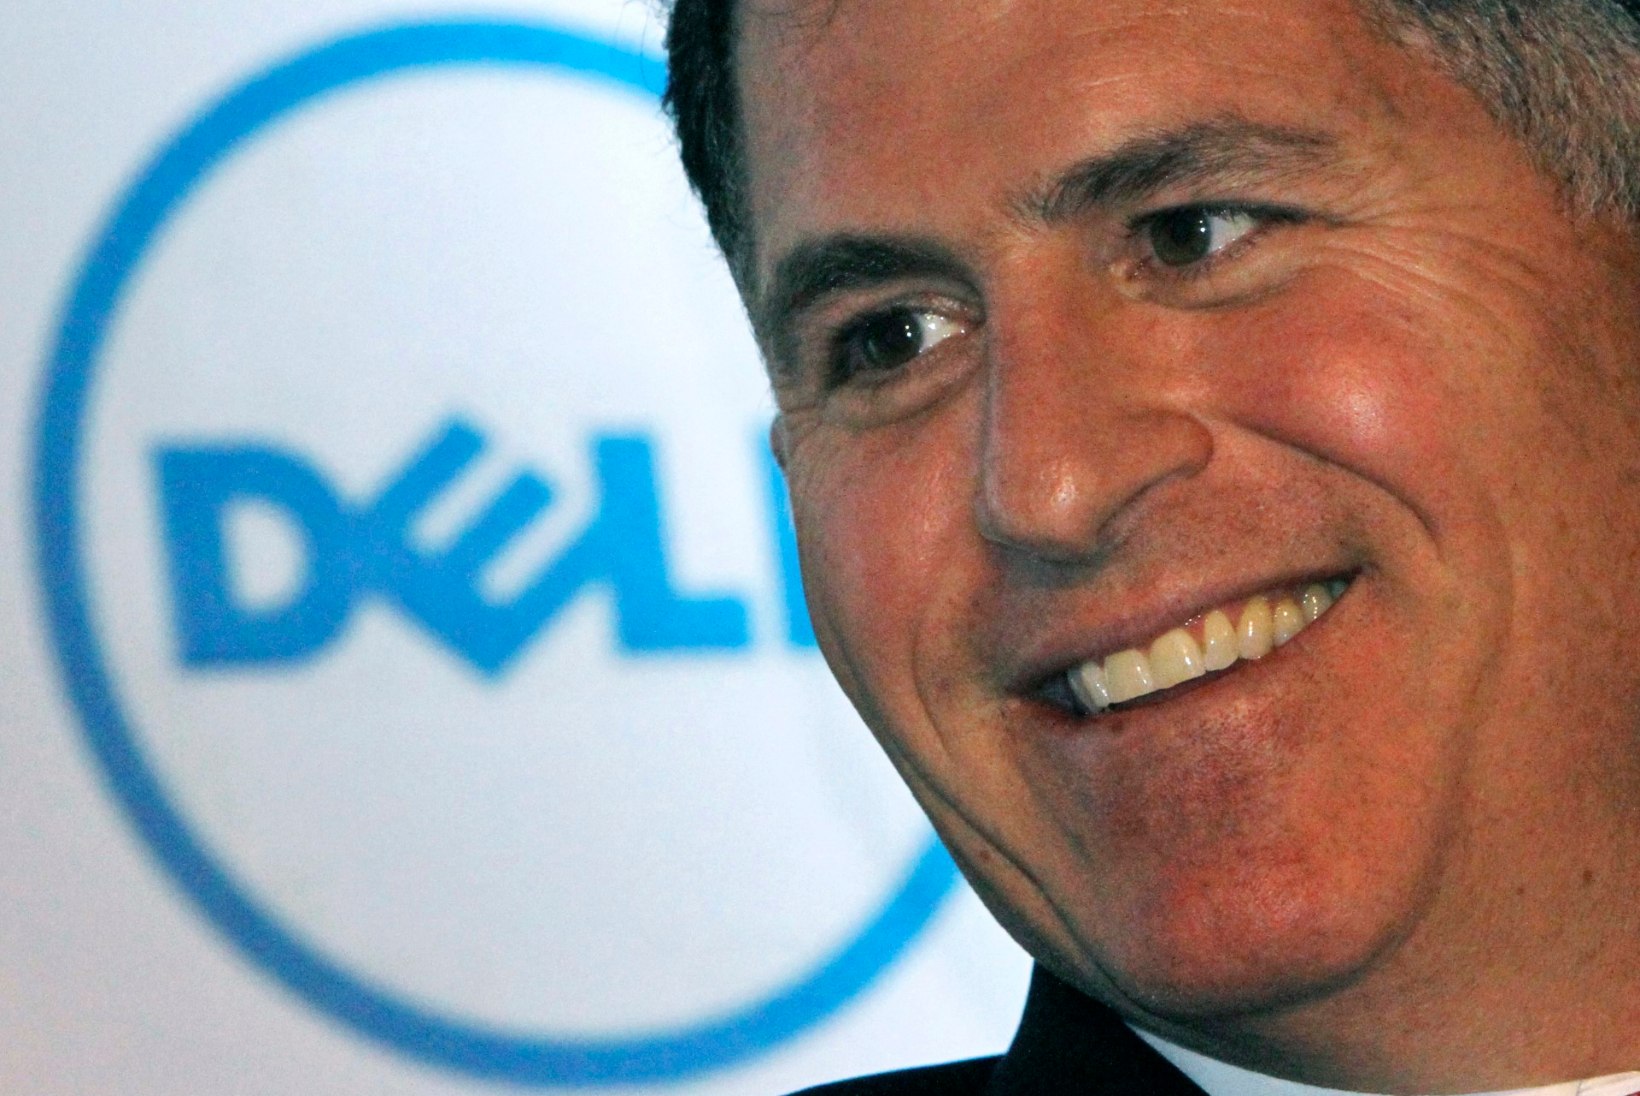 Arvutimiljardär Delli tütar eputab 3 miljonit dollarit maksva kihlasõrmusega